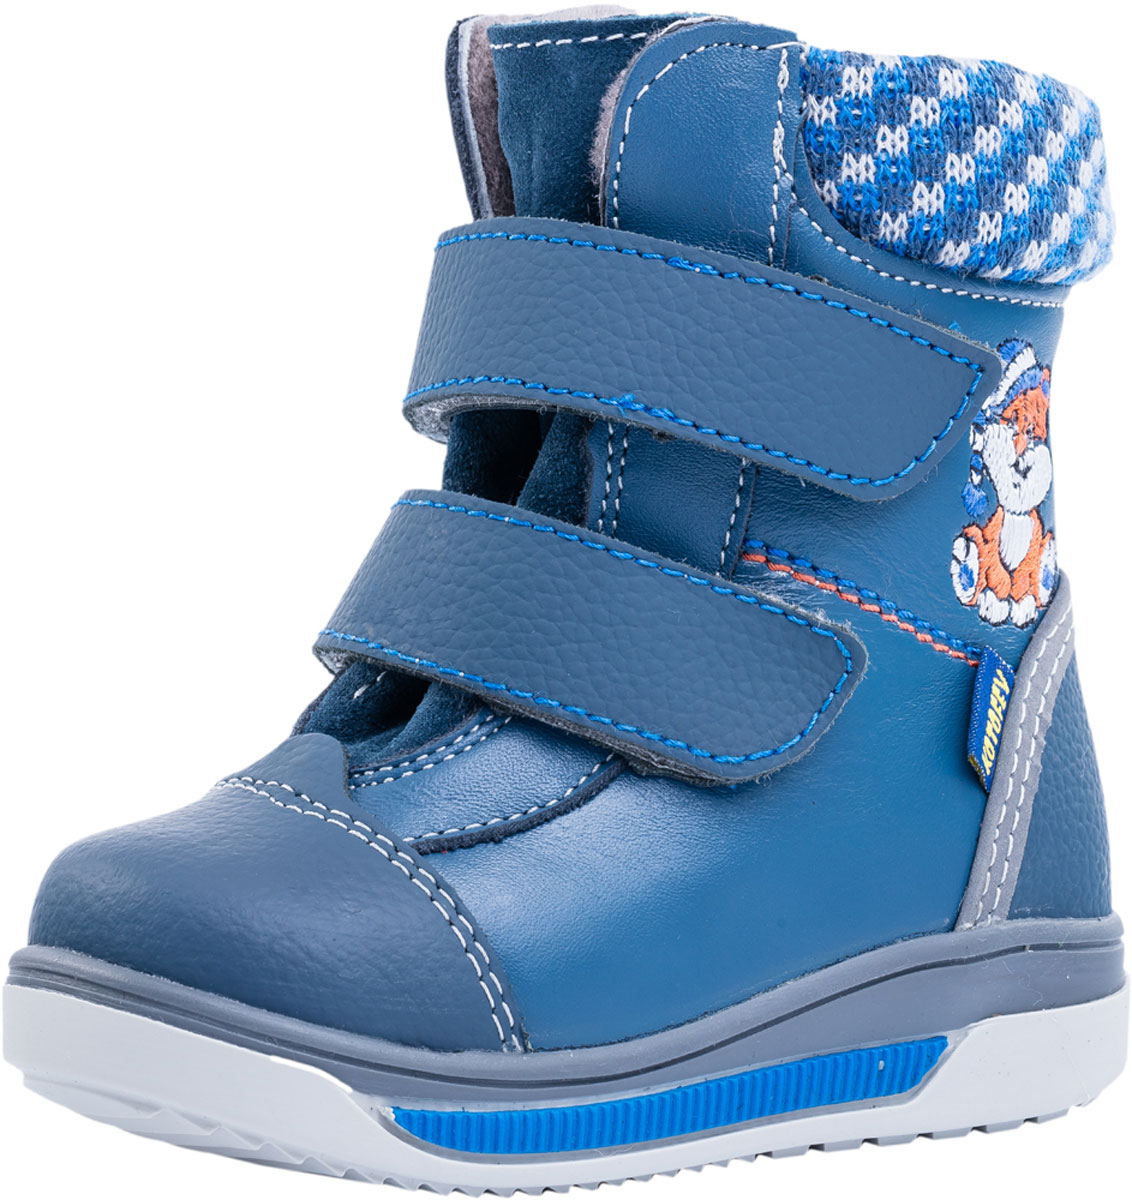 Ботинки для мальчика Котофей, цвет: синий. 152187-51. Размер 22